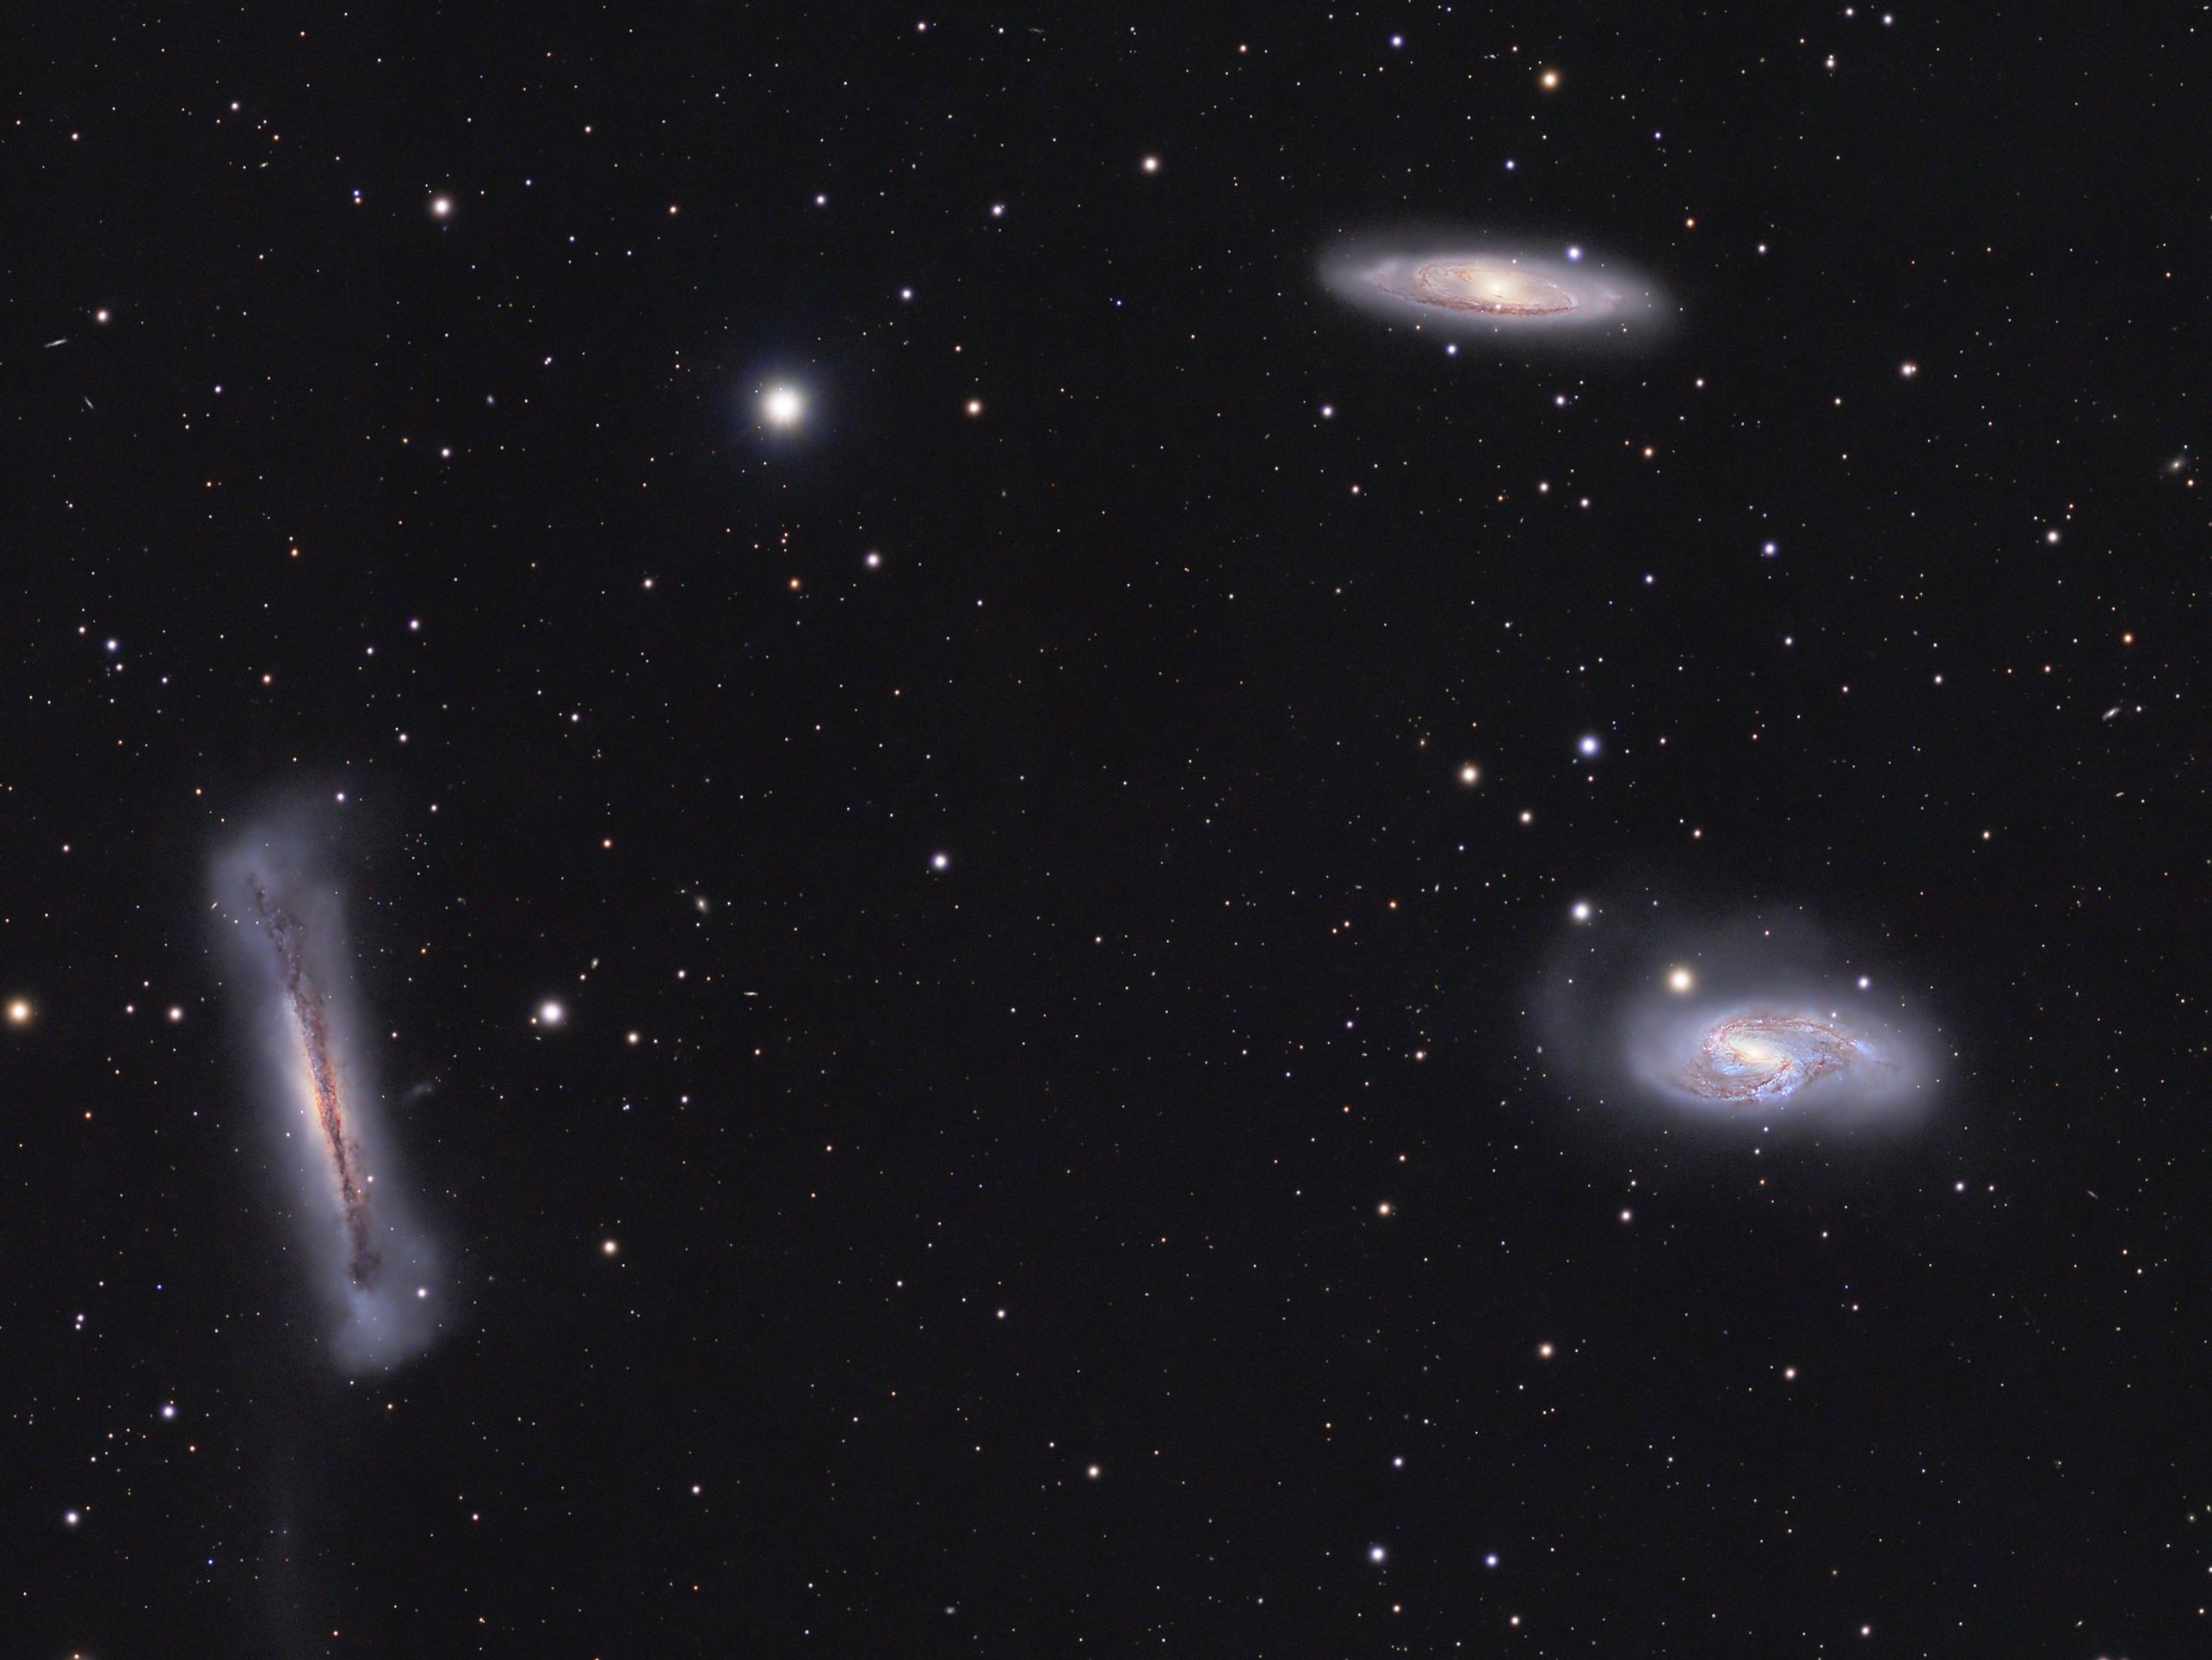 ثلاث مجرّات تُرى من زوايا مختلفة مع تناثر نجوم الخلفيّة عبر الصورة